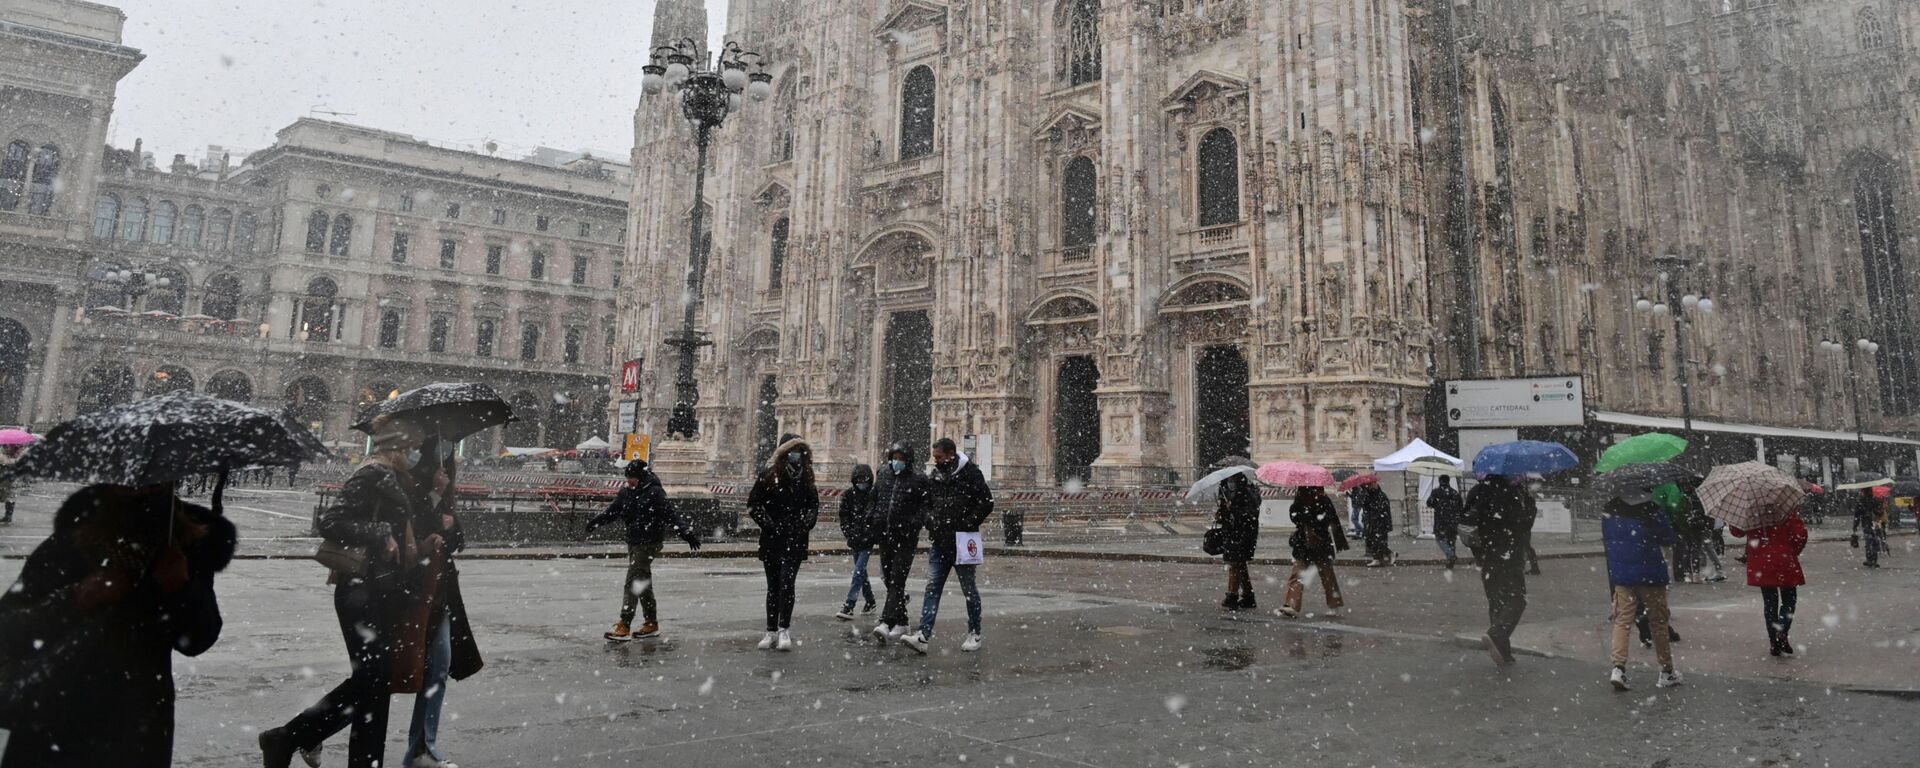 Люди идут по площади Пьяцца дель Дуомо мимо собора под снегопадом в Милане - Sputnik Армения, 1920, 11.12.2021